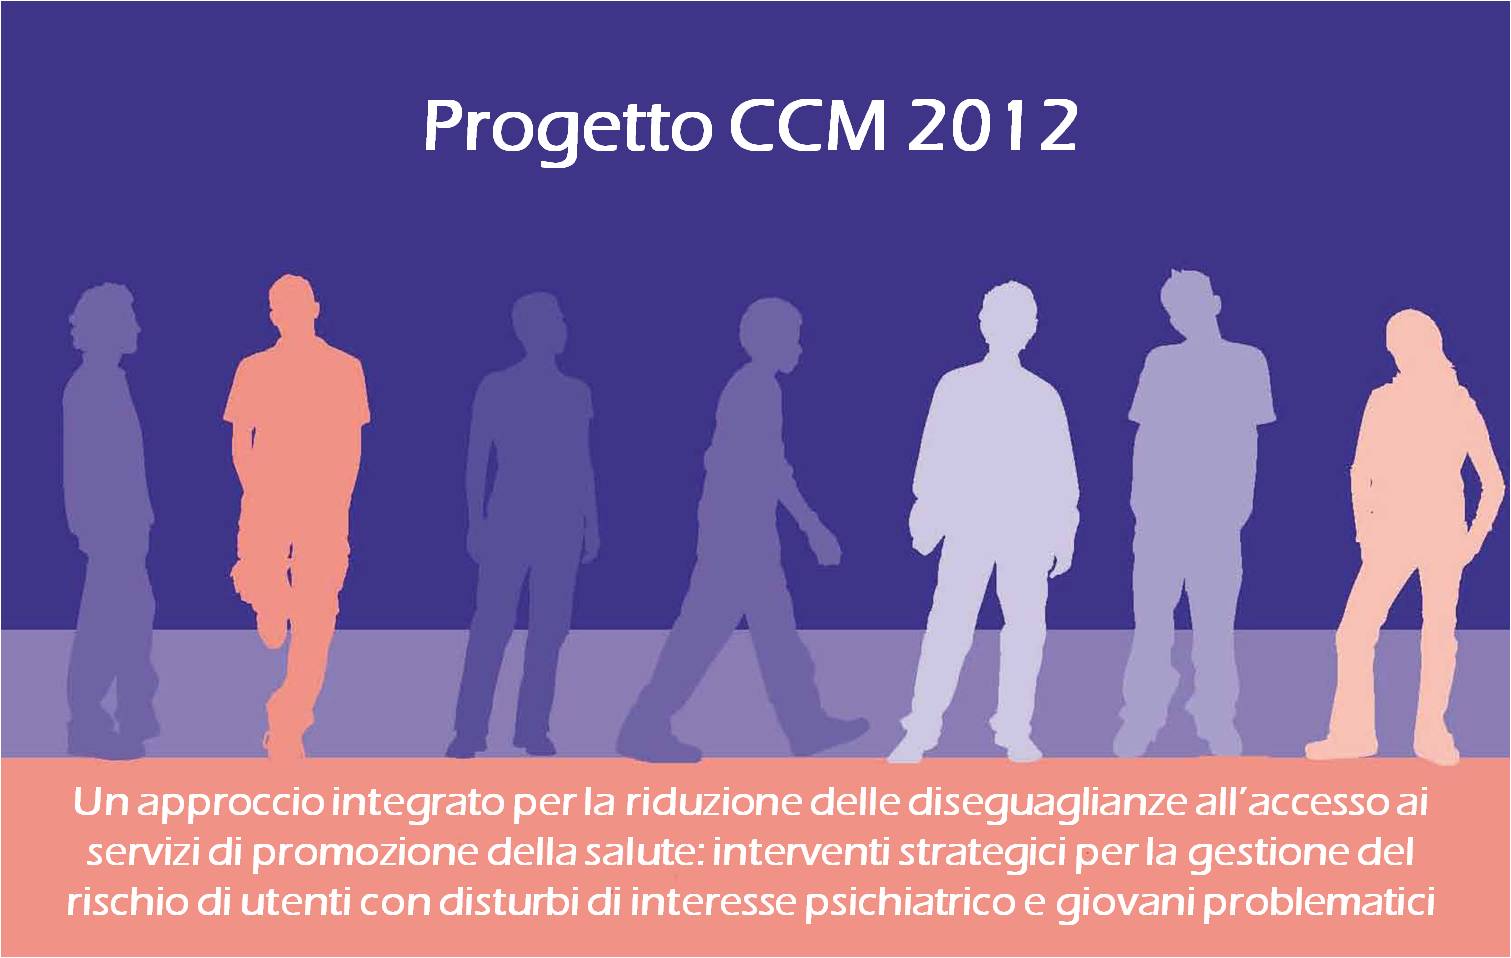 CCM 2012 - Un approccio integrato per la  riduzione delle diseguaglianze all’accesso ai servizi di promozione della salute